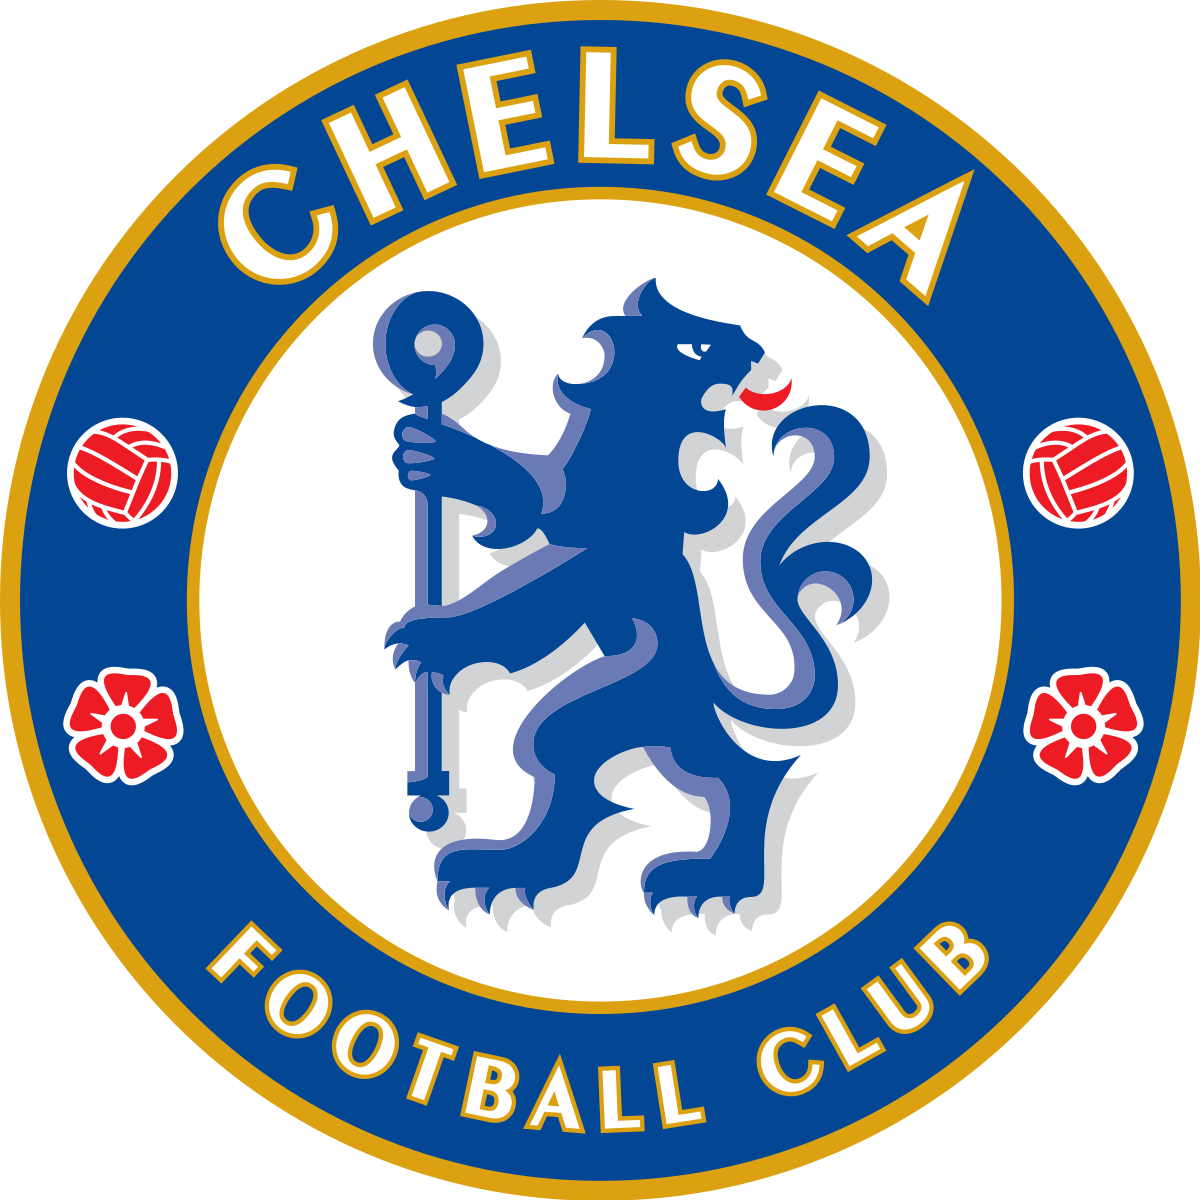 Câu lạc bộ Chelsea